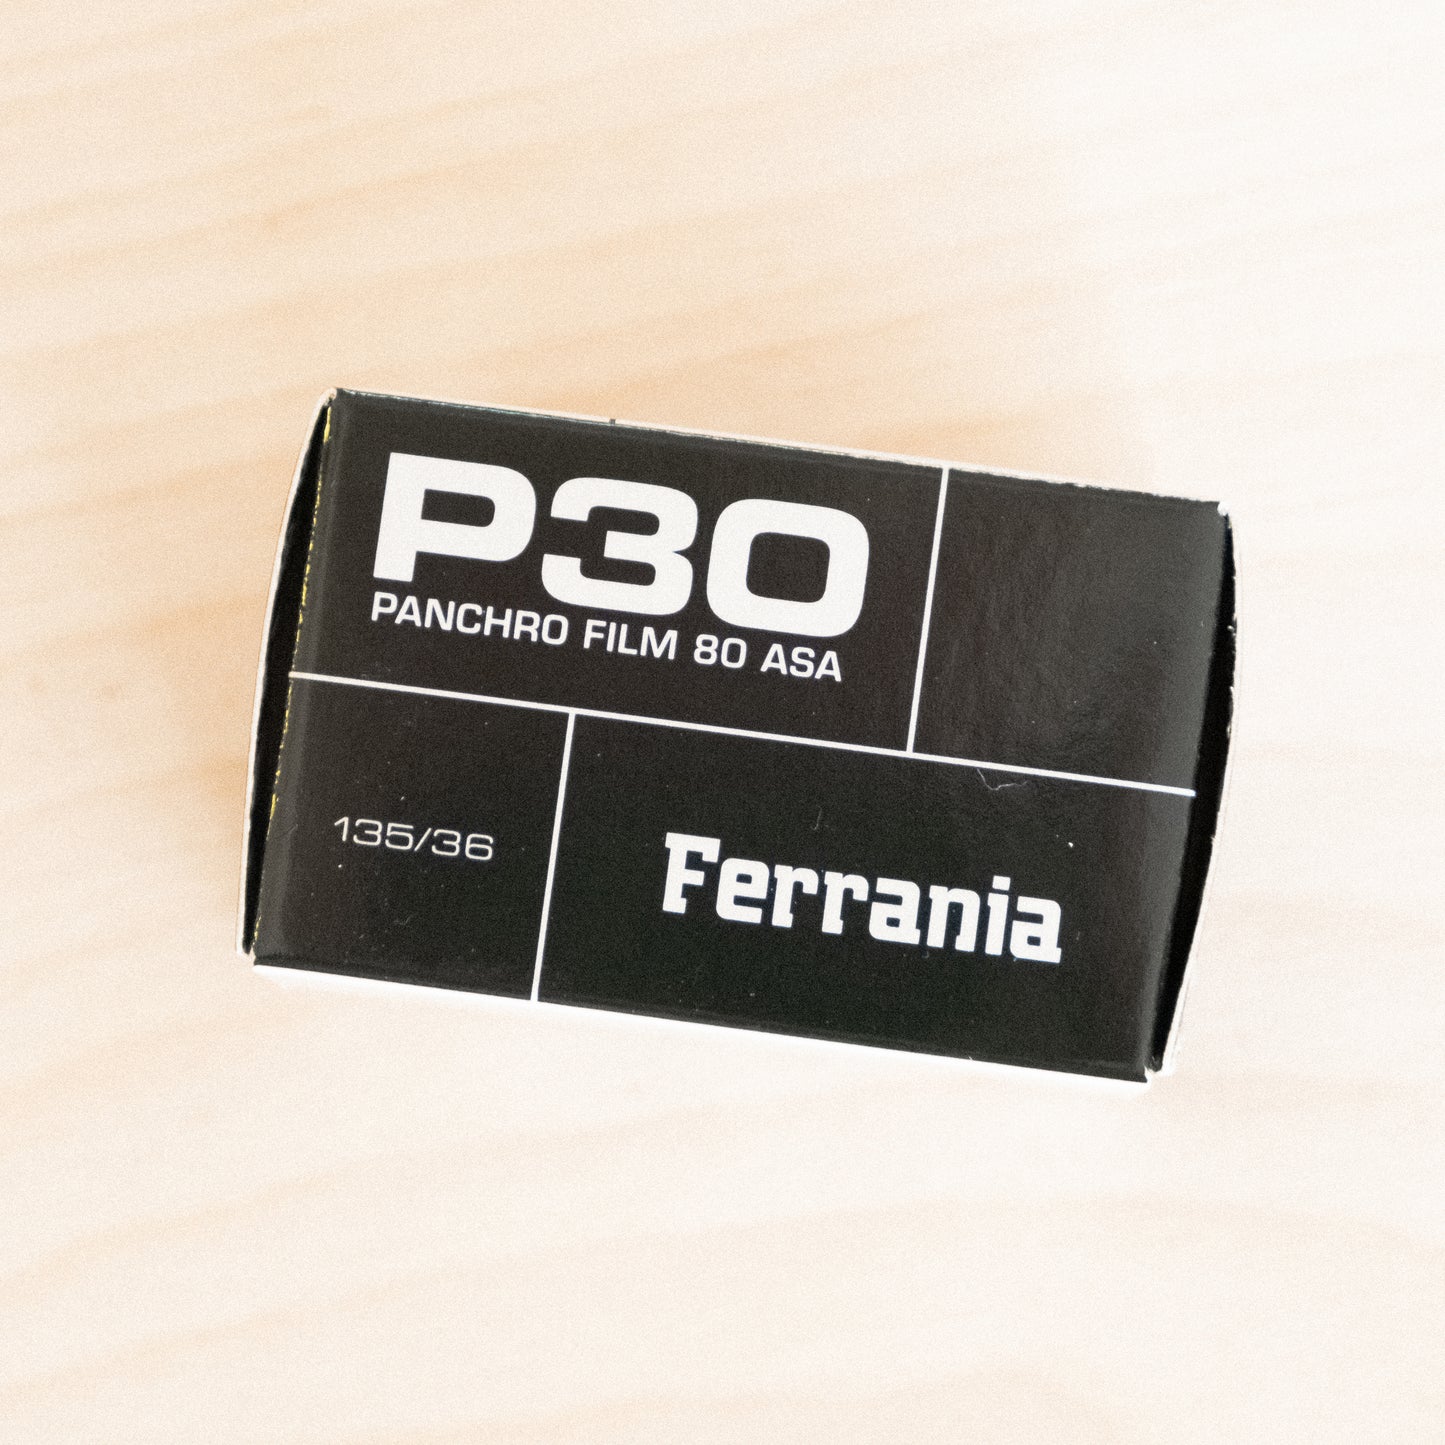 Ferrania P30